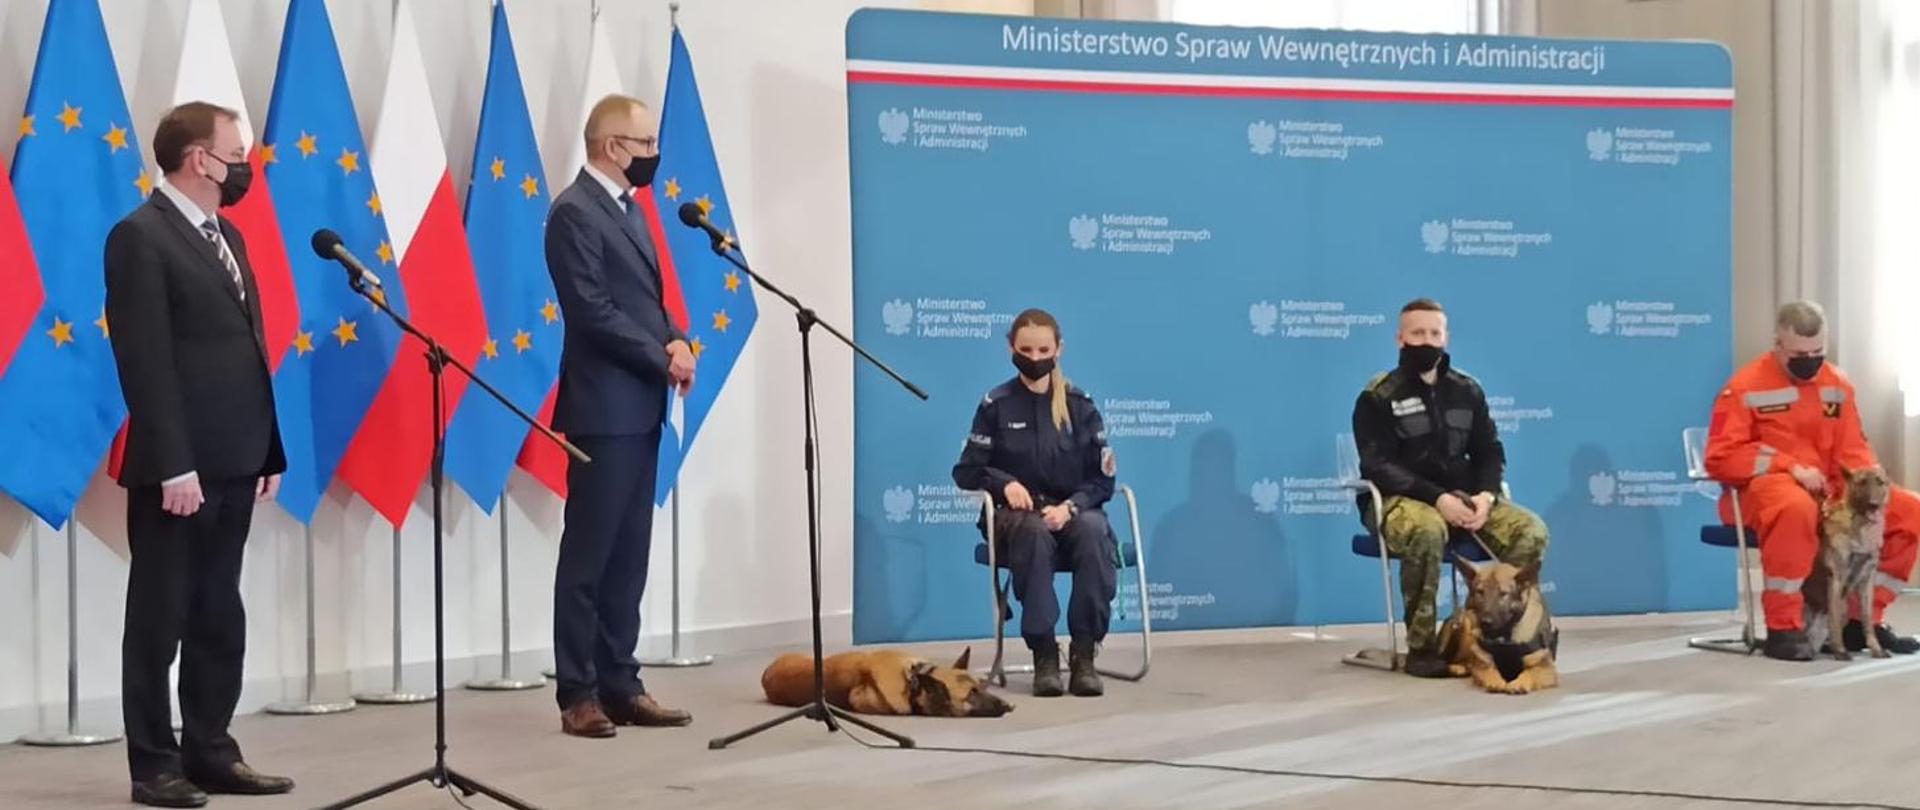 zdjęcie z konferencji, na którym widać stojących ministra swia, prowadzącego konferencję, oraz policjantkę strażnika granicznego i strażaka z psami służbowymi. Funkcjonariusze siedzą na krzesłach w tle flagi polski i unii europejskiej i baner ministerstwa swia